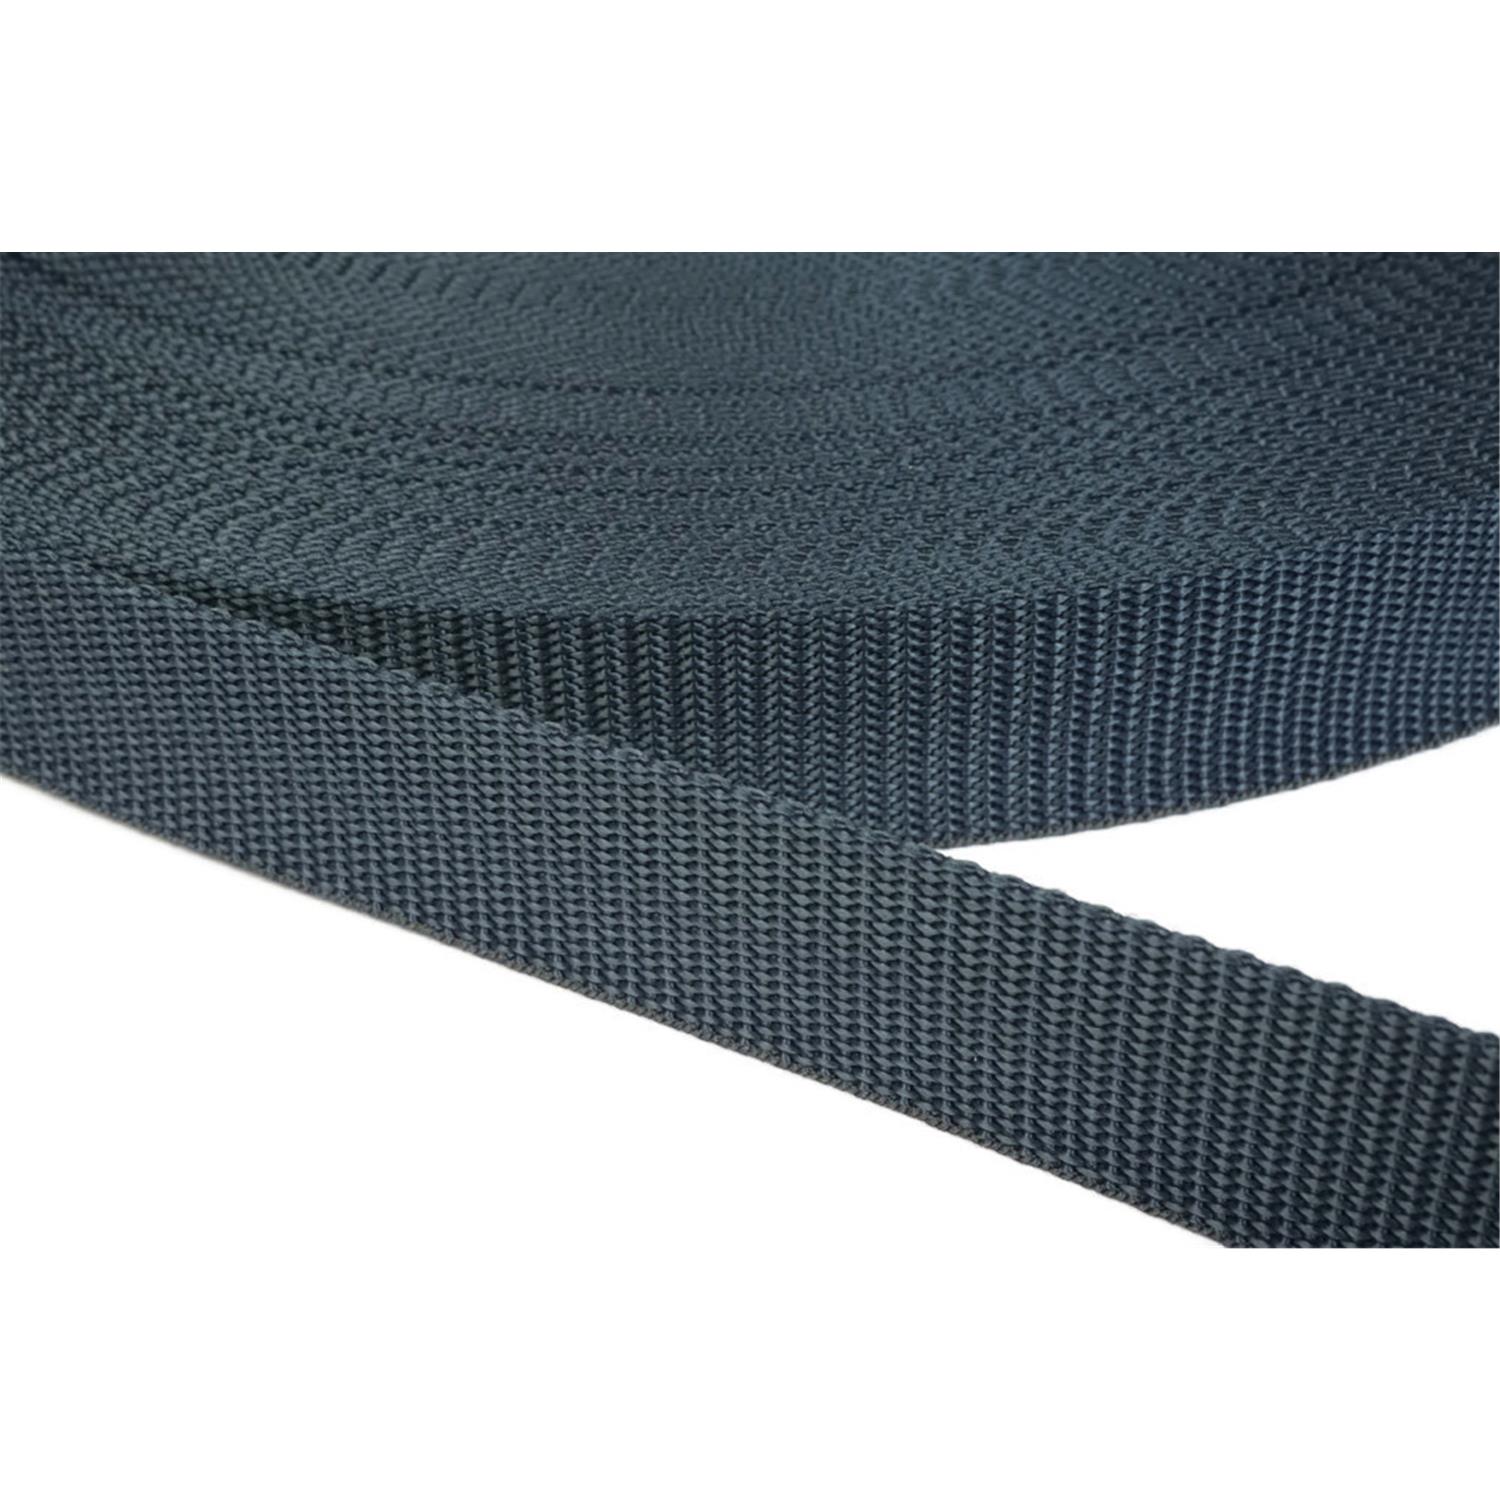 Gurtband 30mm breit aus Polypropylen in 41 Farben 40 - dunkelgrau/blau 50 Meter